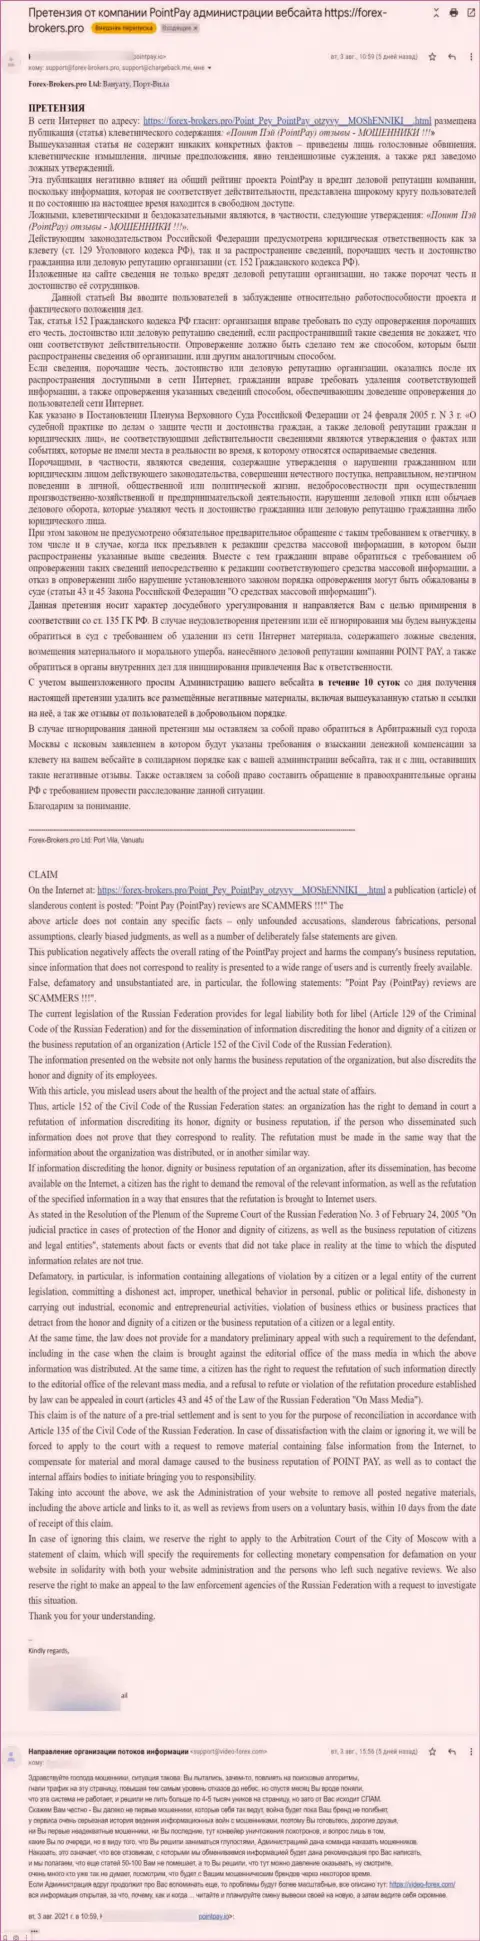 Ещё одна петиция мошенников Поинт Пей с настоятельным пожеланием удалить информационный материал